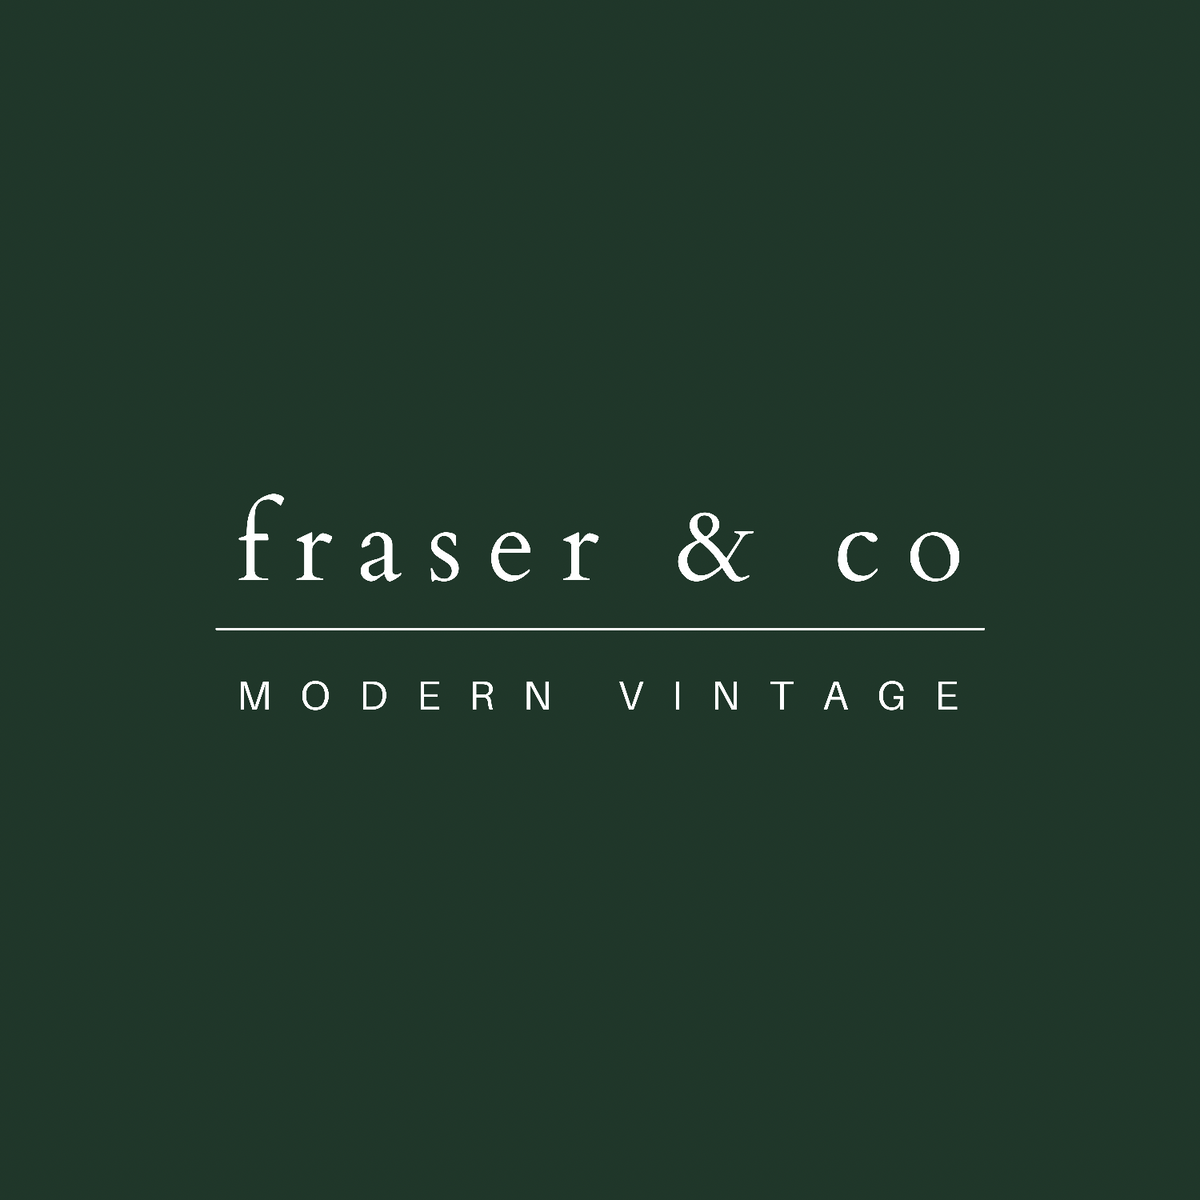 Fraser & Co. Modern Vintage